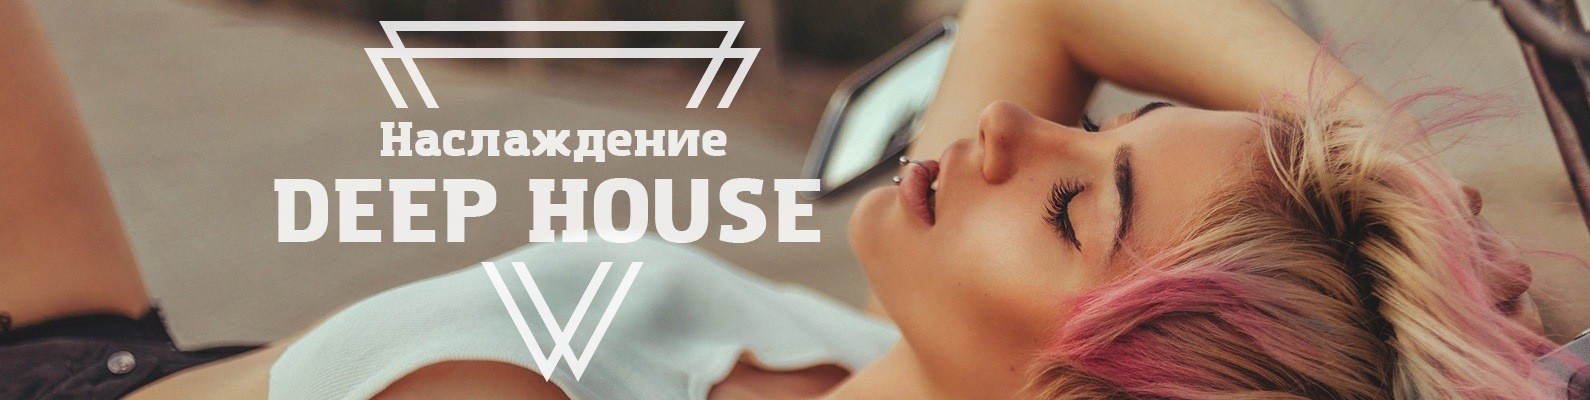 Слушать дип хаус 2023 лучшее. Deep House обложка. Обложки для ВК Deep House. Логотип Deep House. Обложка для сообщества в ВК депиляция.